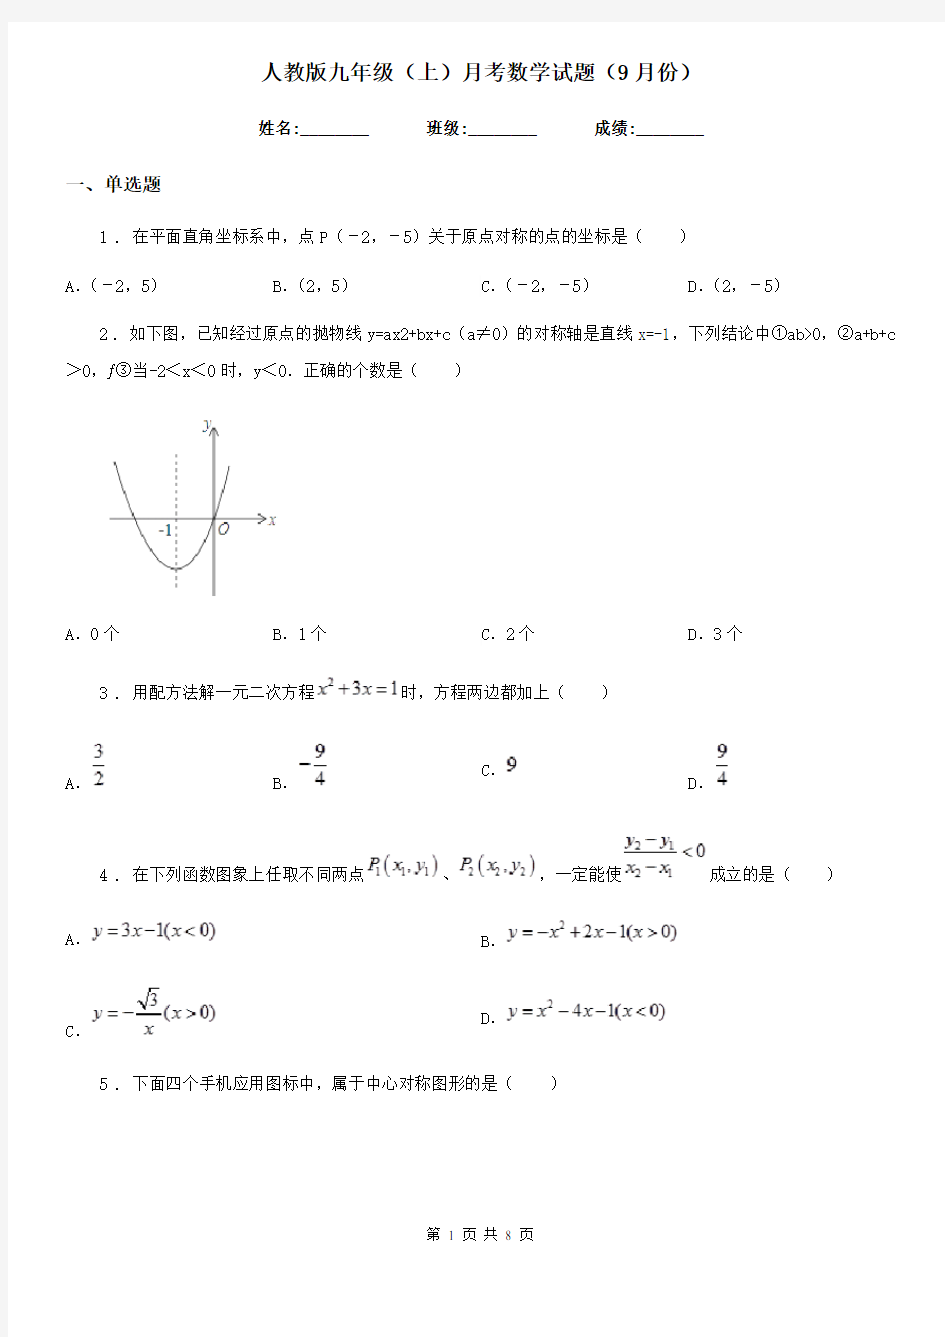 人教版九年级(上)月考数学试题(9月份)